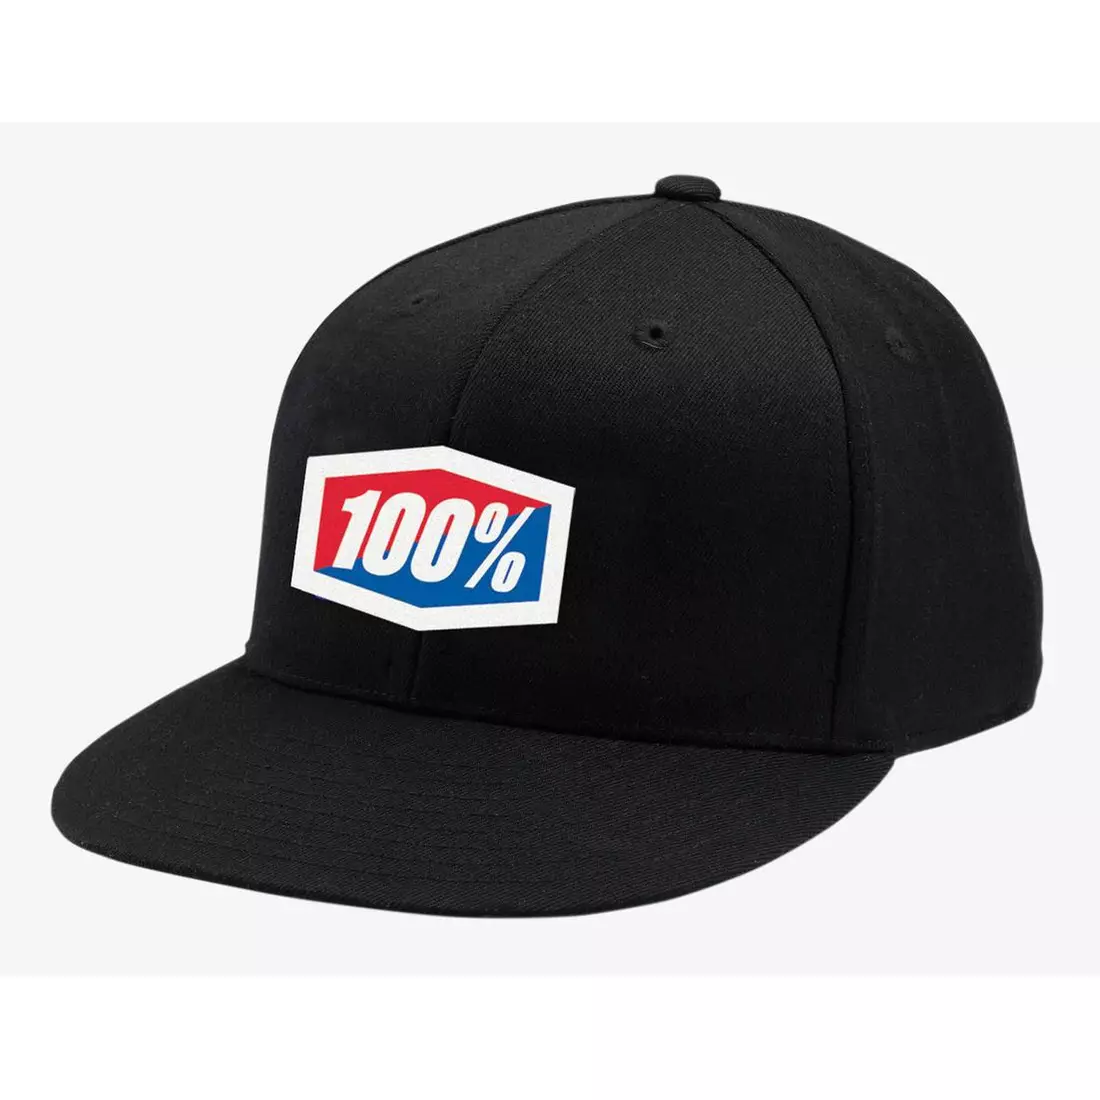 100% bejzbalová čiapka official J-Fit flexfit hat black STO-20040-001-17